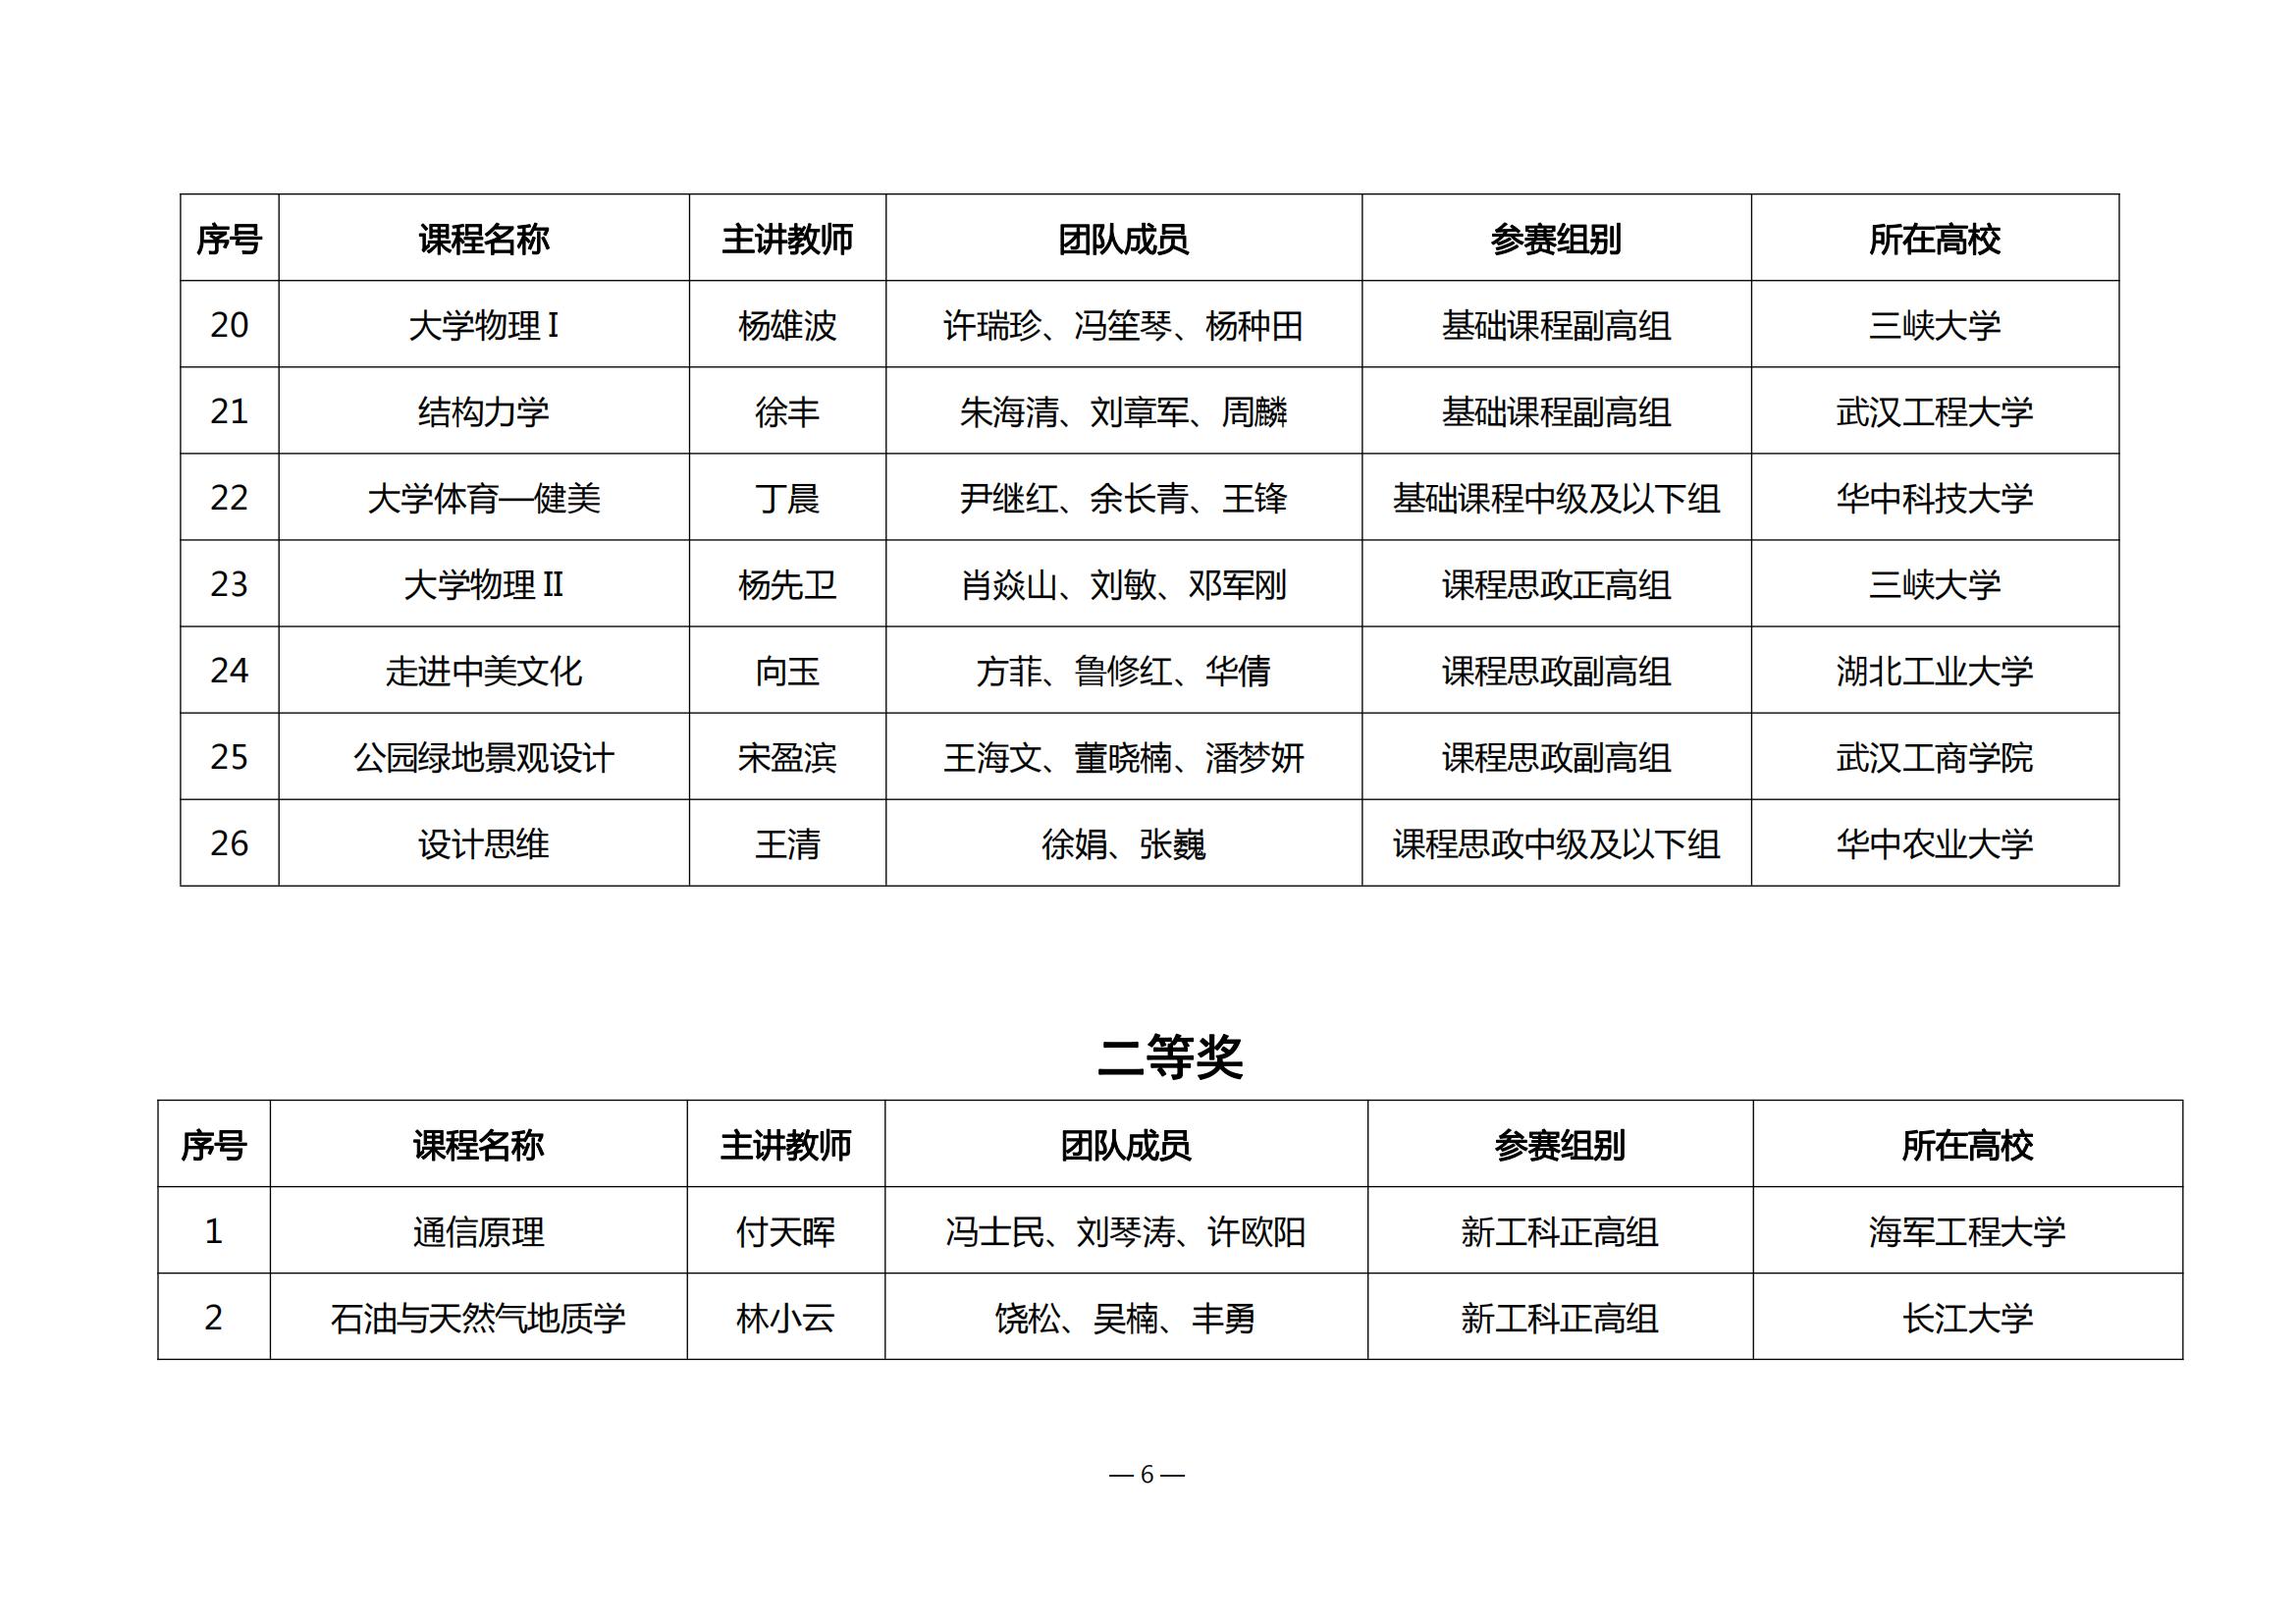 第四届湖北省高校教师教学创新大赛评审结果公示_05.jpg